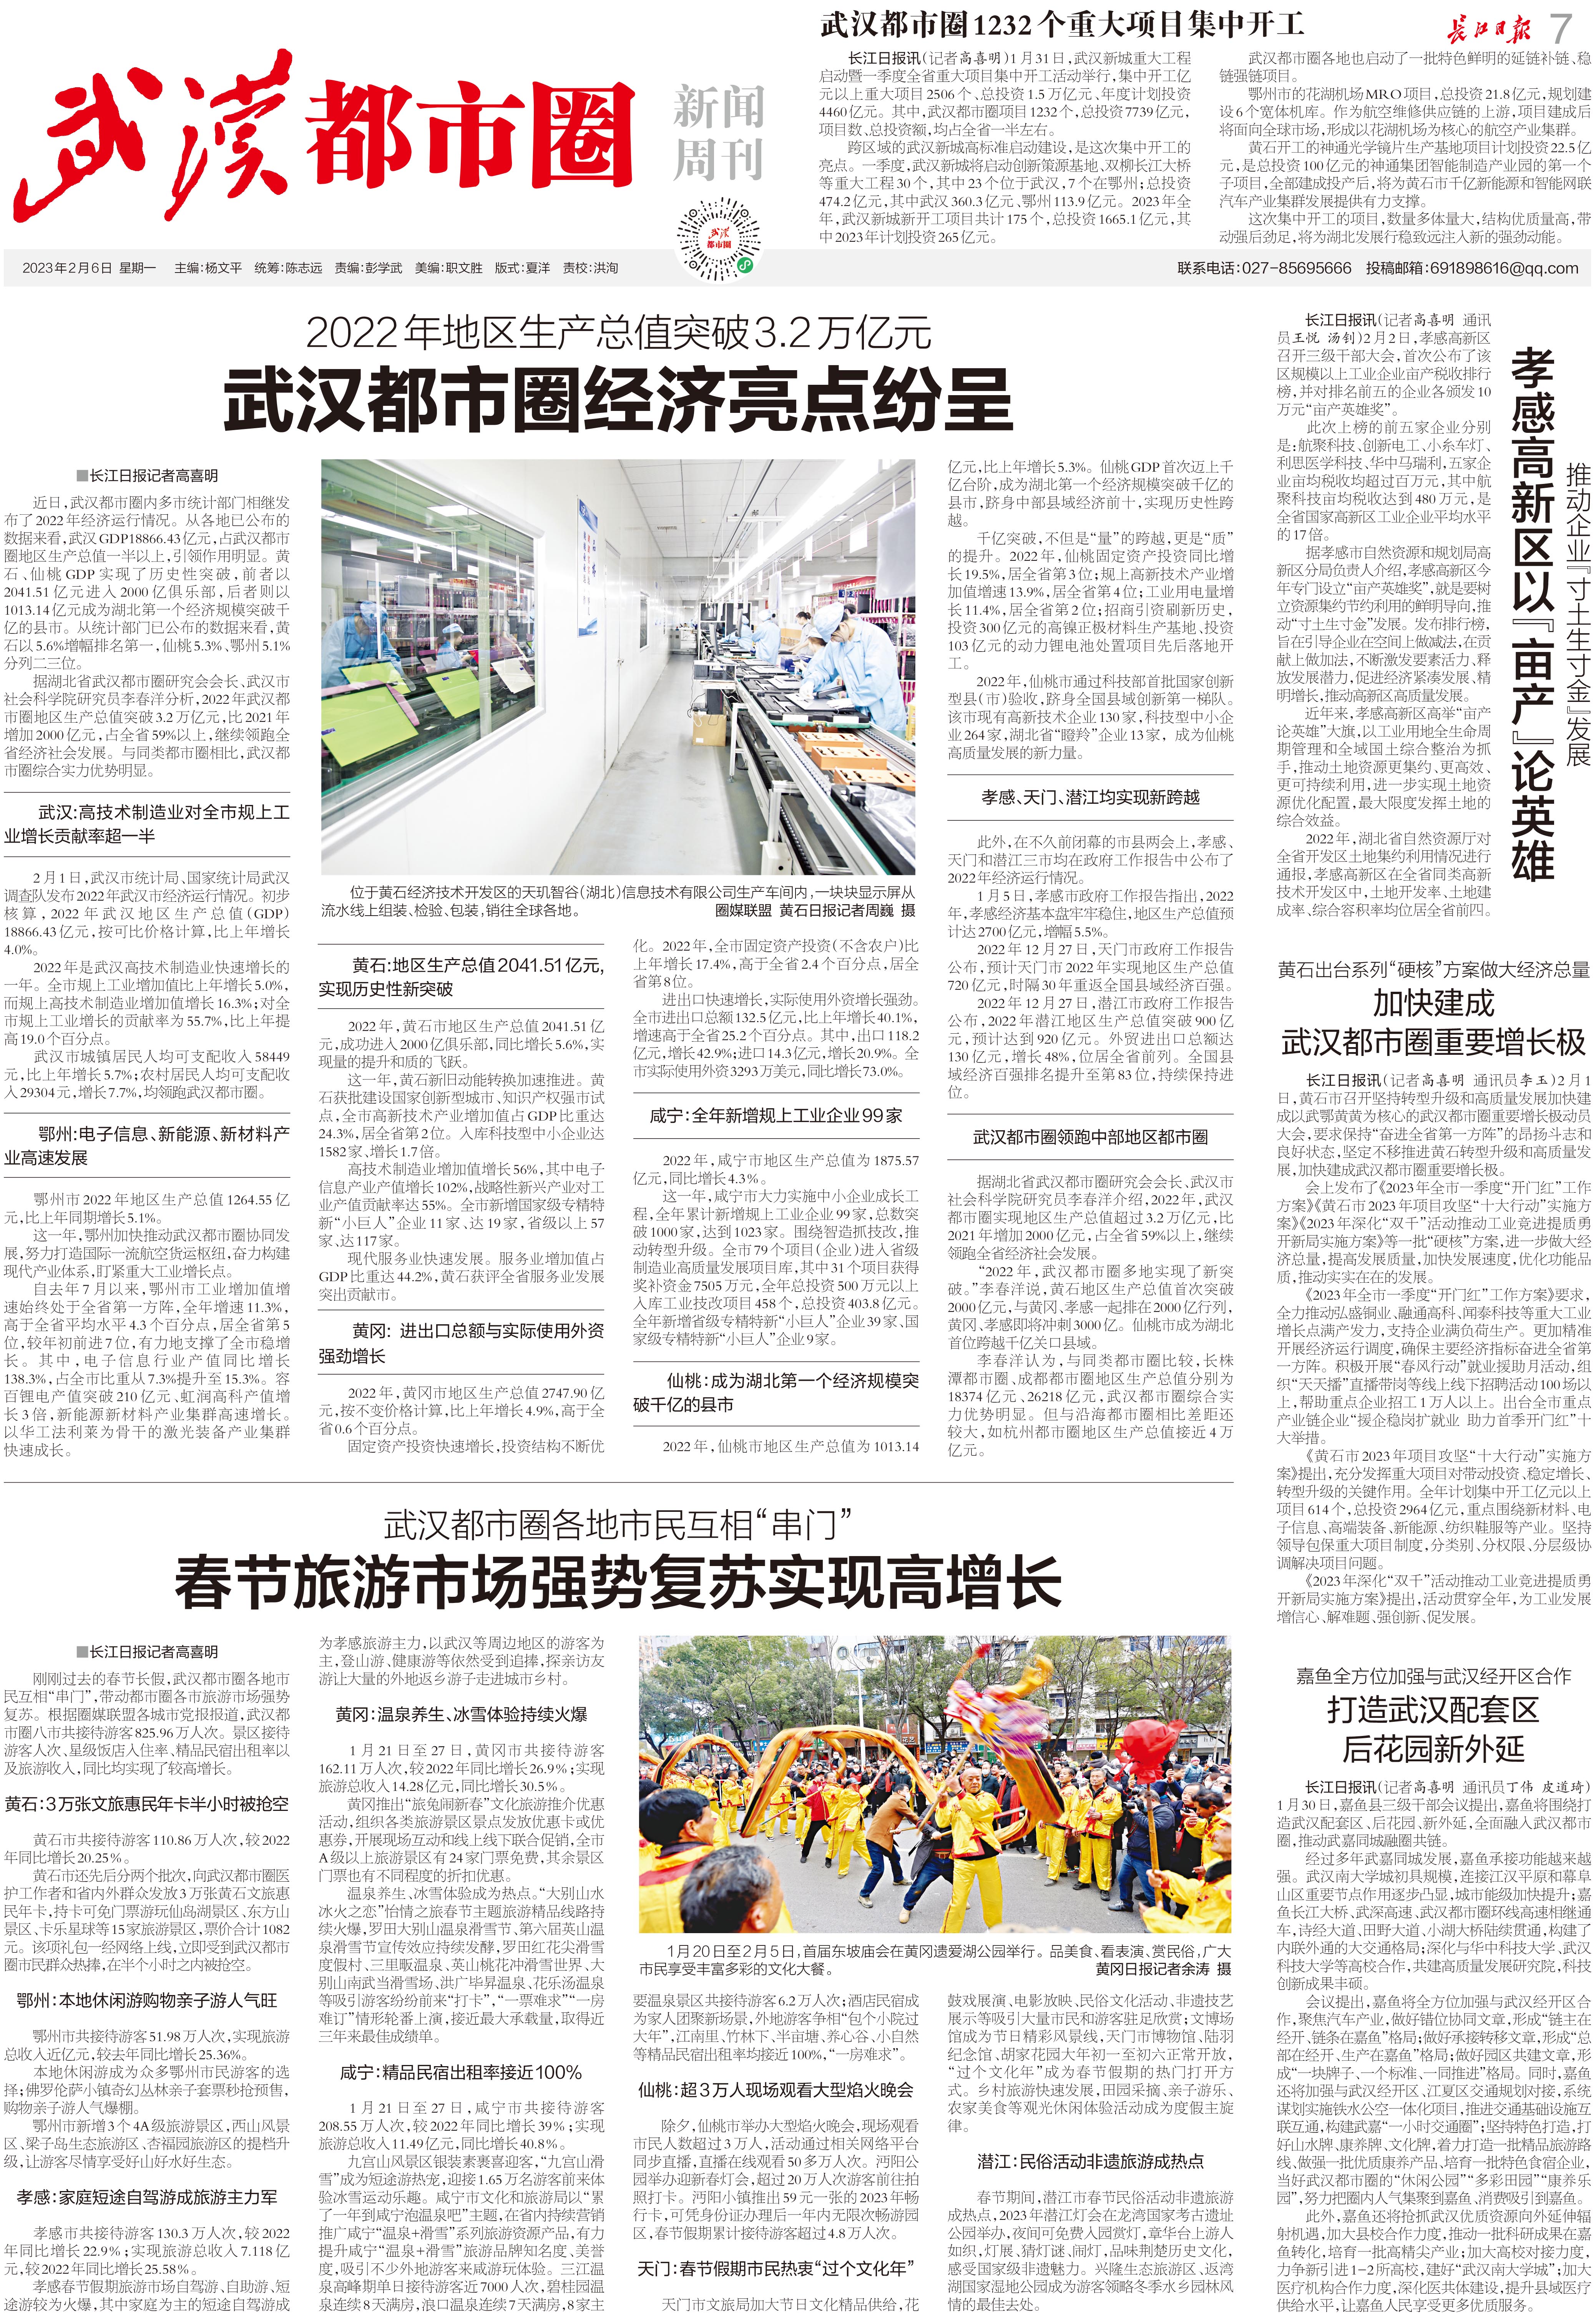 【九城同心向未来】长江日报《武汉都市圈新闻周刊》(2023年2月6日第